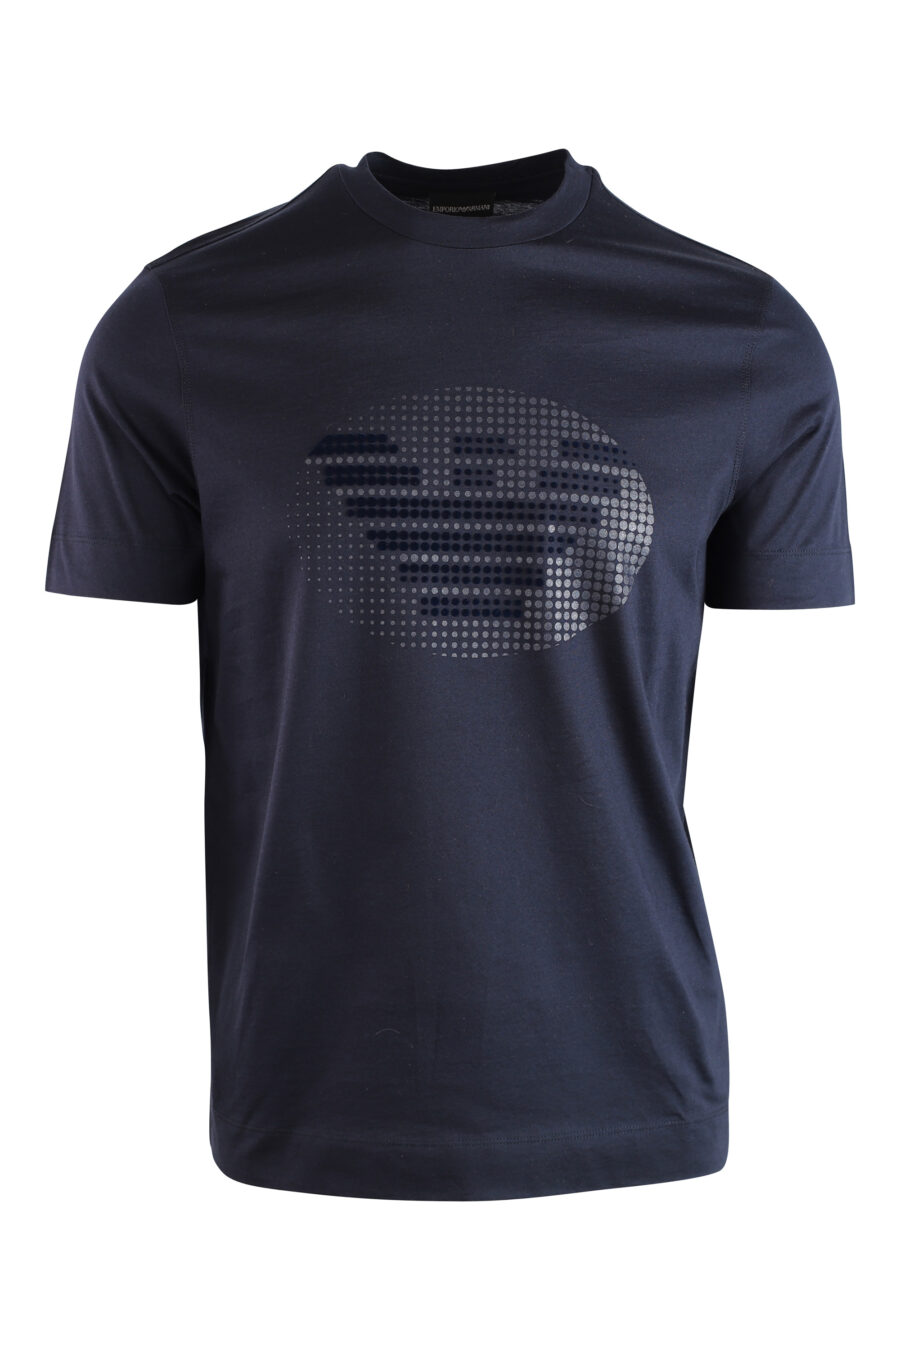 Camiseta azul oscura con maxilogo águila redondo - IMG 3734